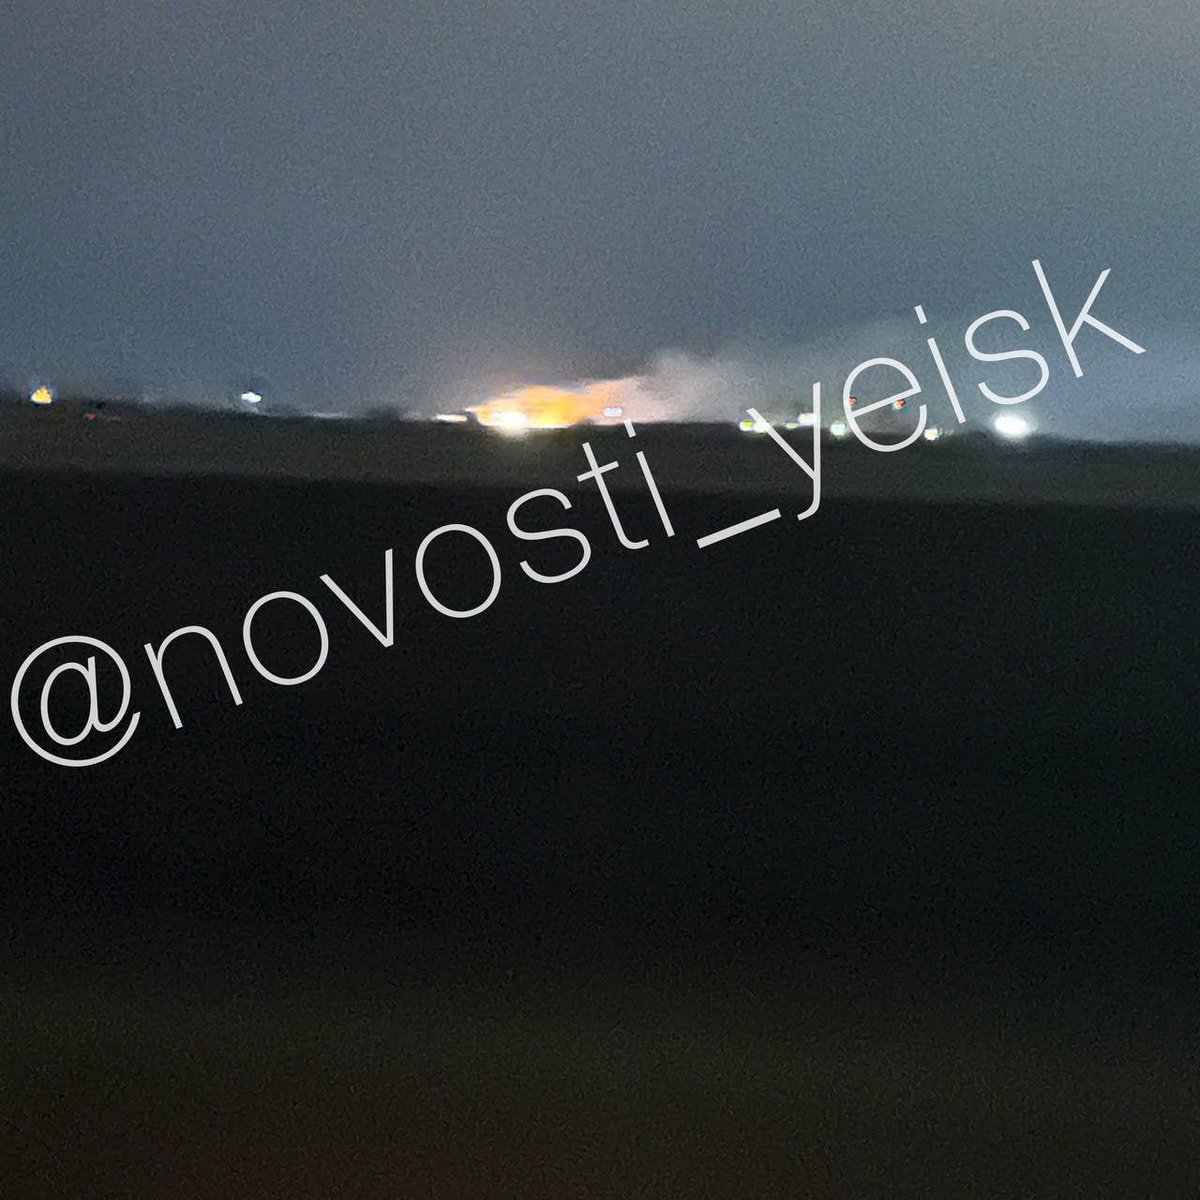 Es van registrar incendis i explosions prop de la base aèria de Yeysk, Krasnodar Krai